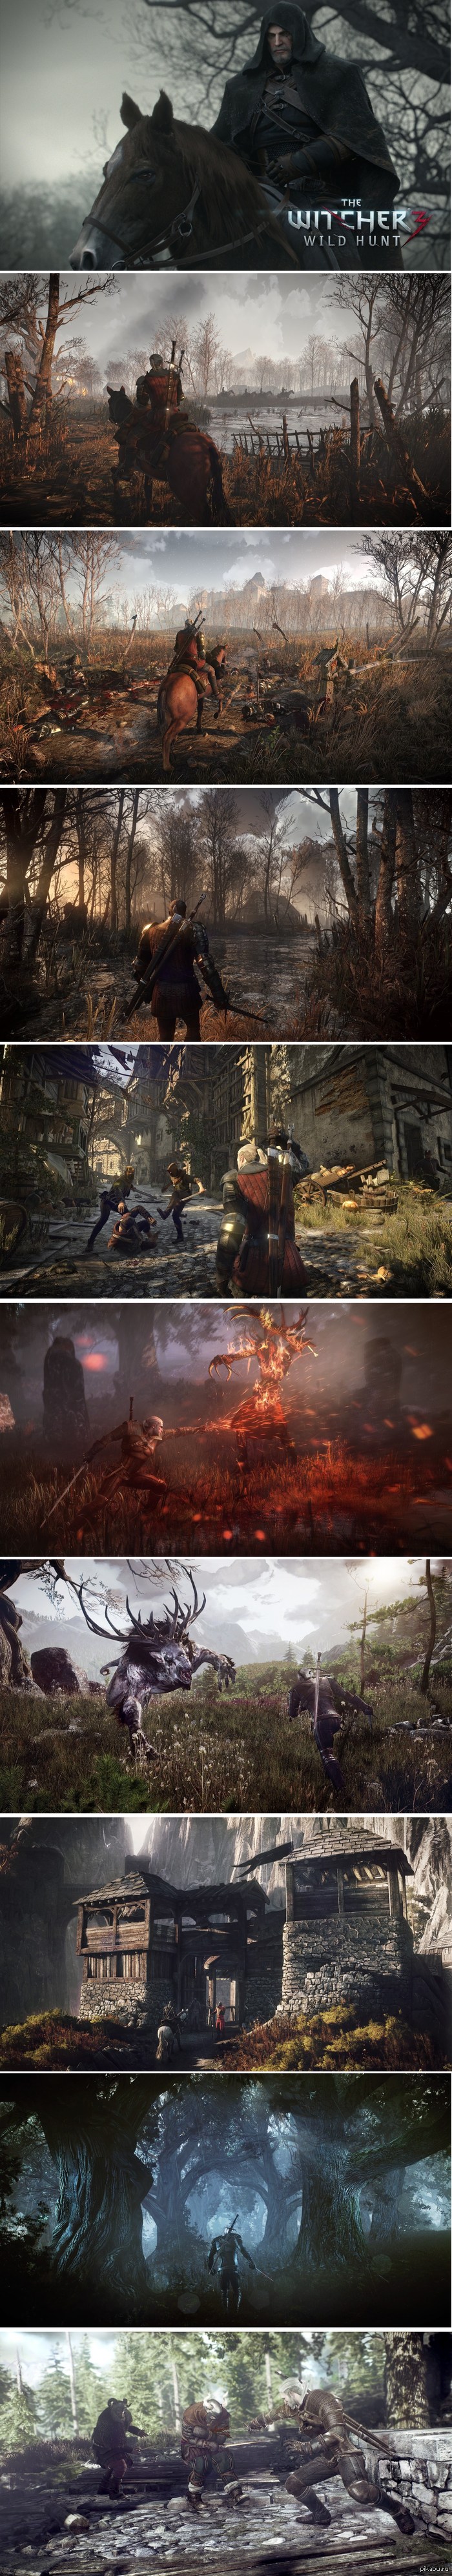 The Witcher 3: Wild Hunt Или самая красивая игра на консоли нового поколения. Несколько новых скриншотов. The Witcher 3: Wild Hunt, PS4, XBOX ONE, Мощный комп, горячая видеокарта, длиннопост